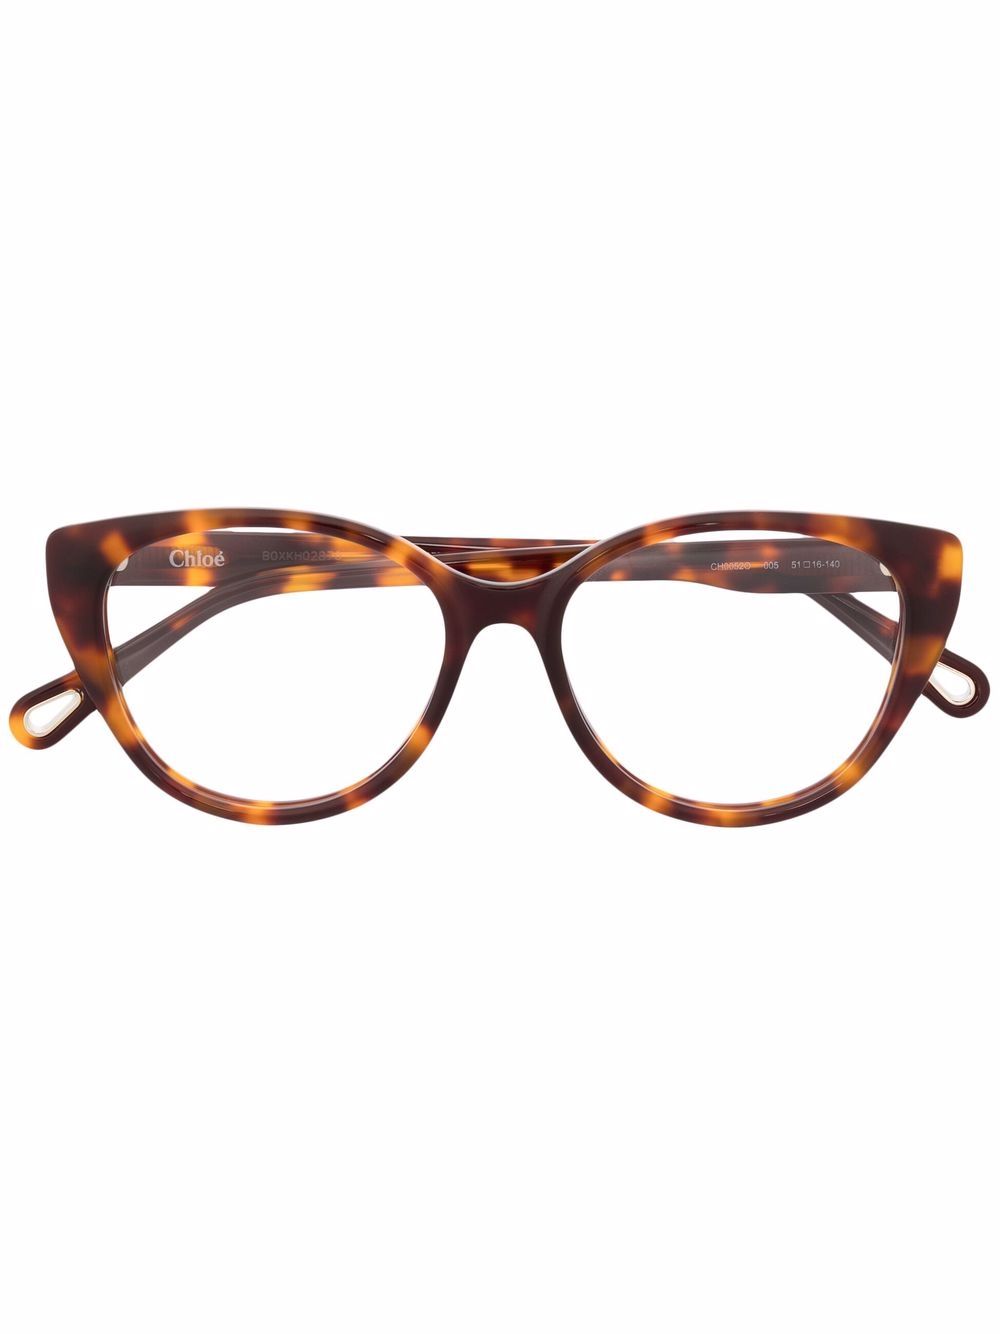 фото Chloé eyewear очки в круглой оправе черепаховой расцветки